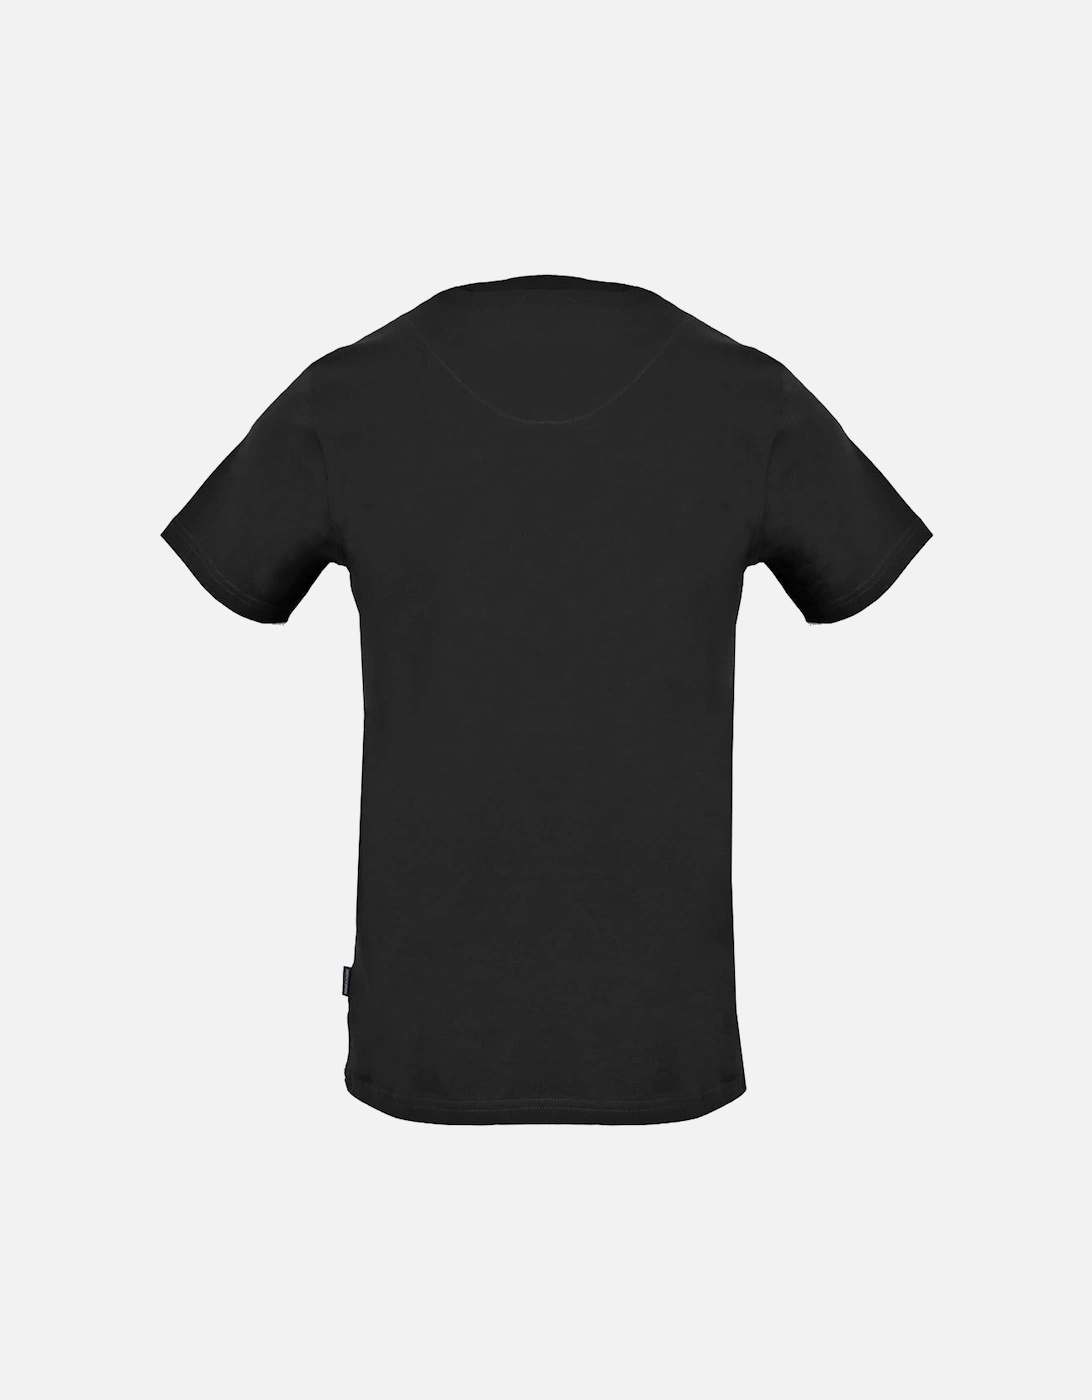 Triple A Logo Black T-Shirt